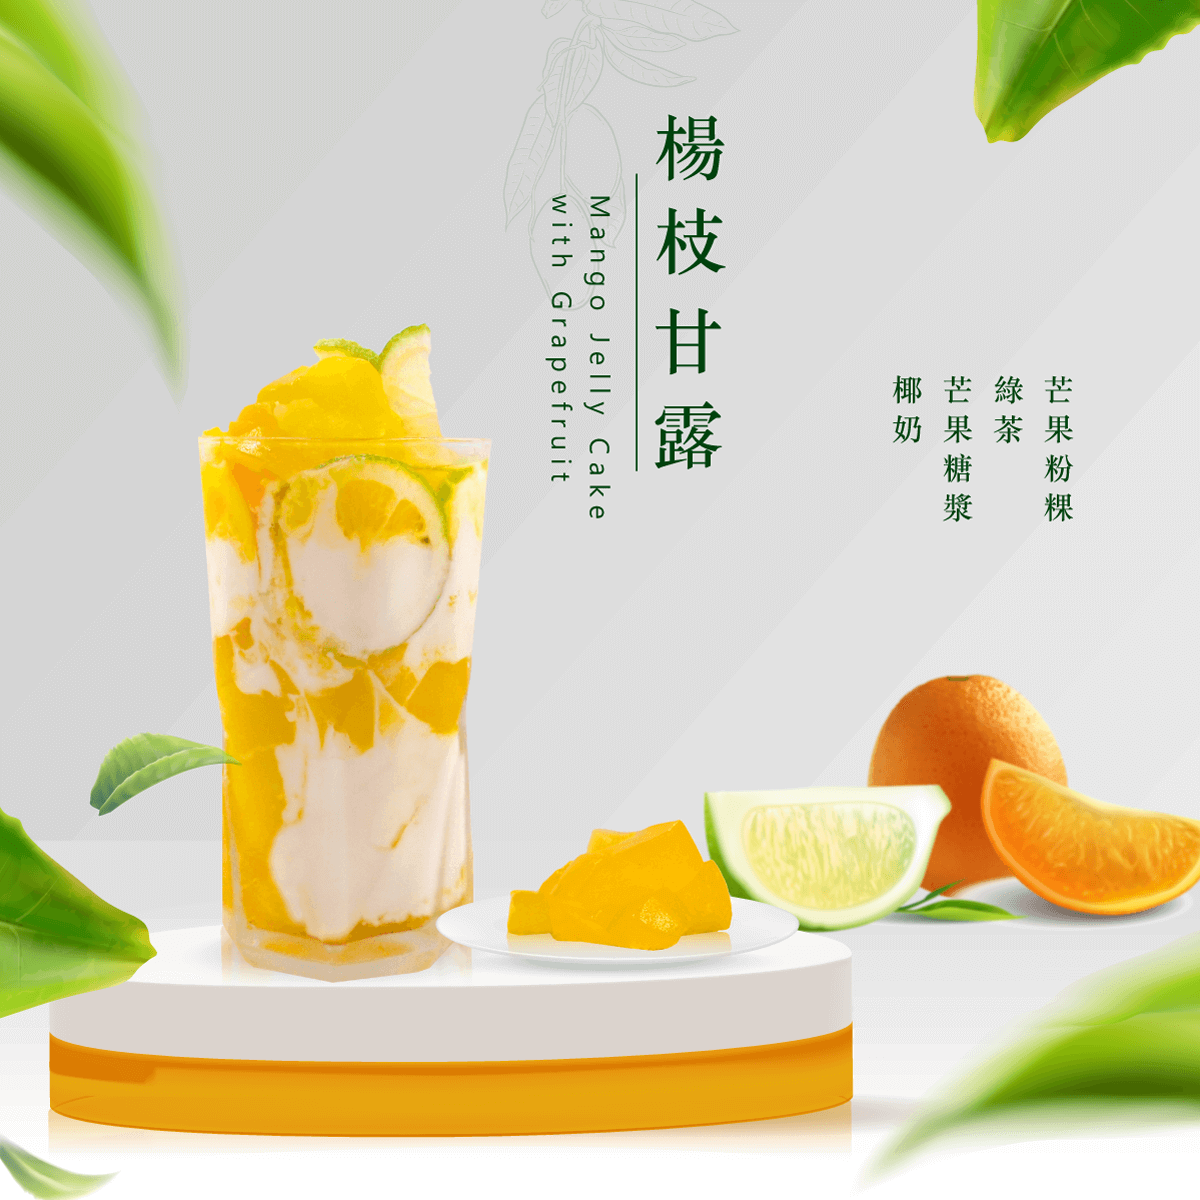 Pastel de gelatina de mango con pomelo (mango sagú)